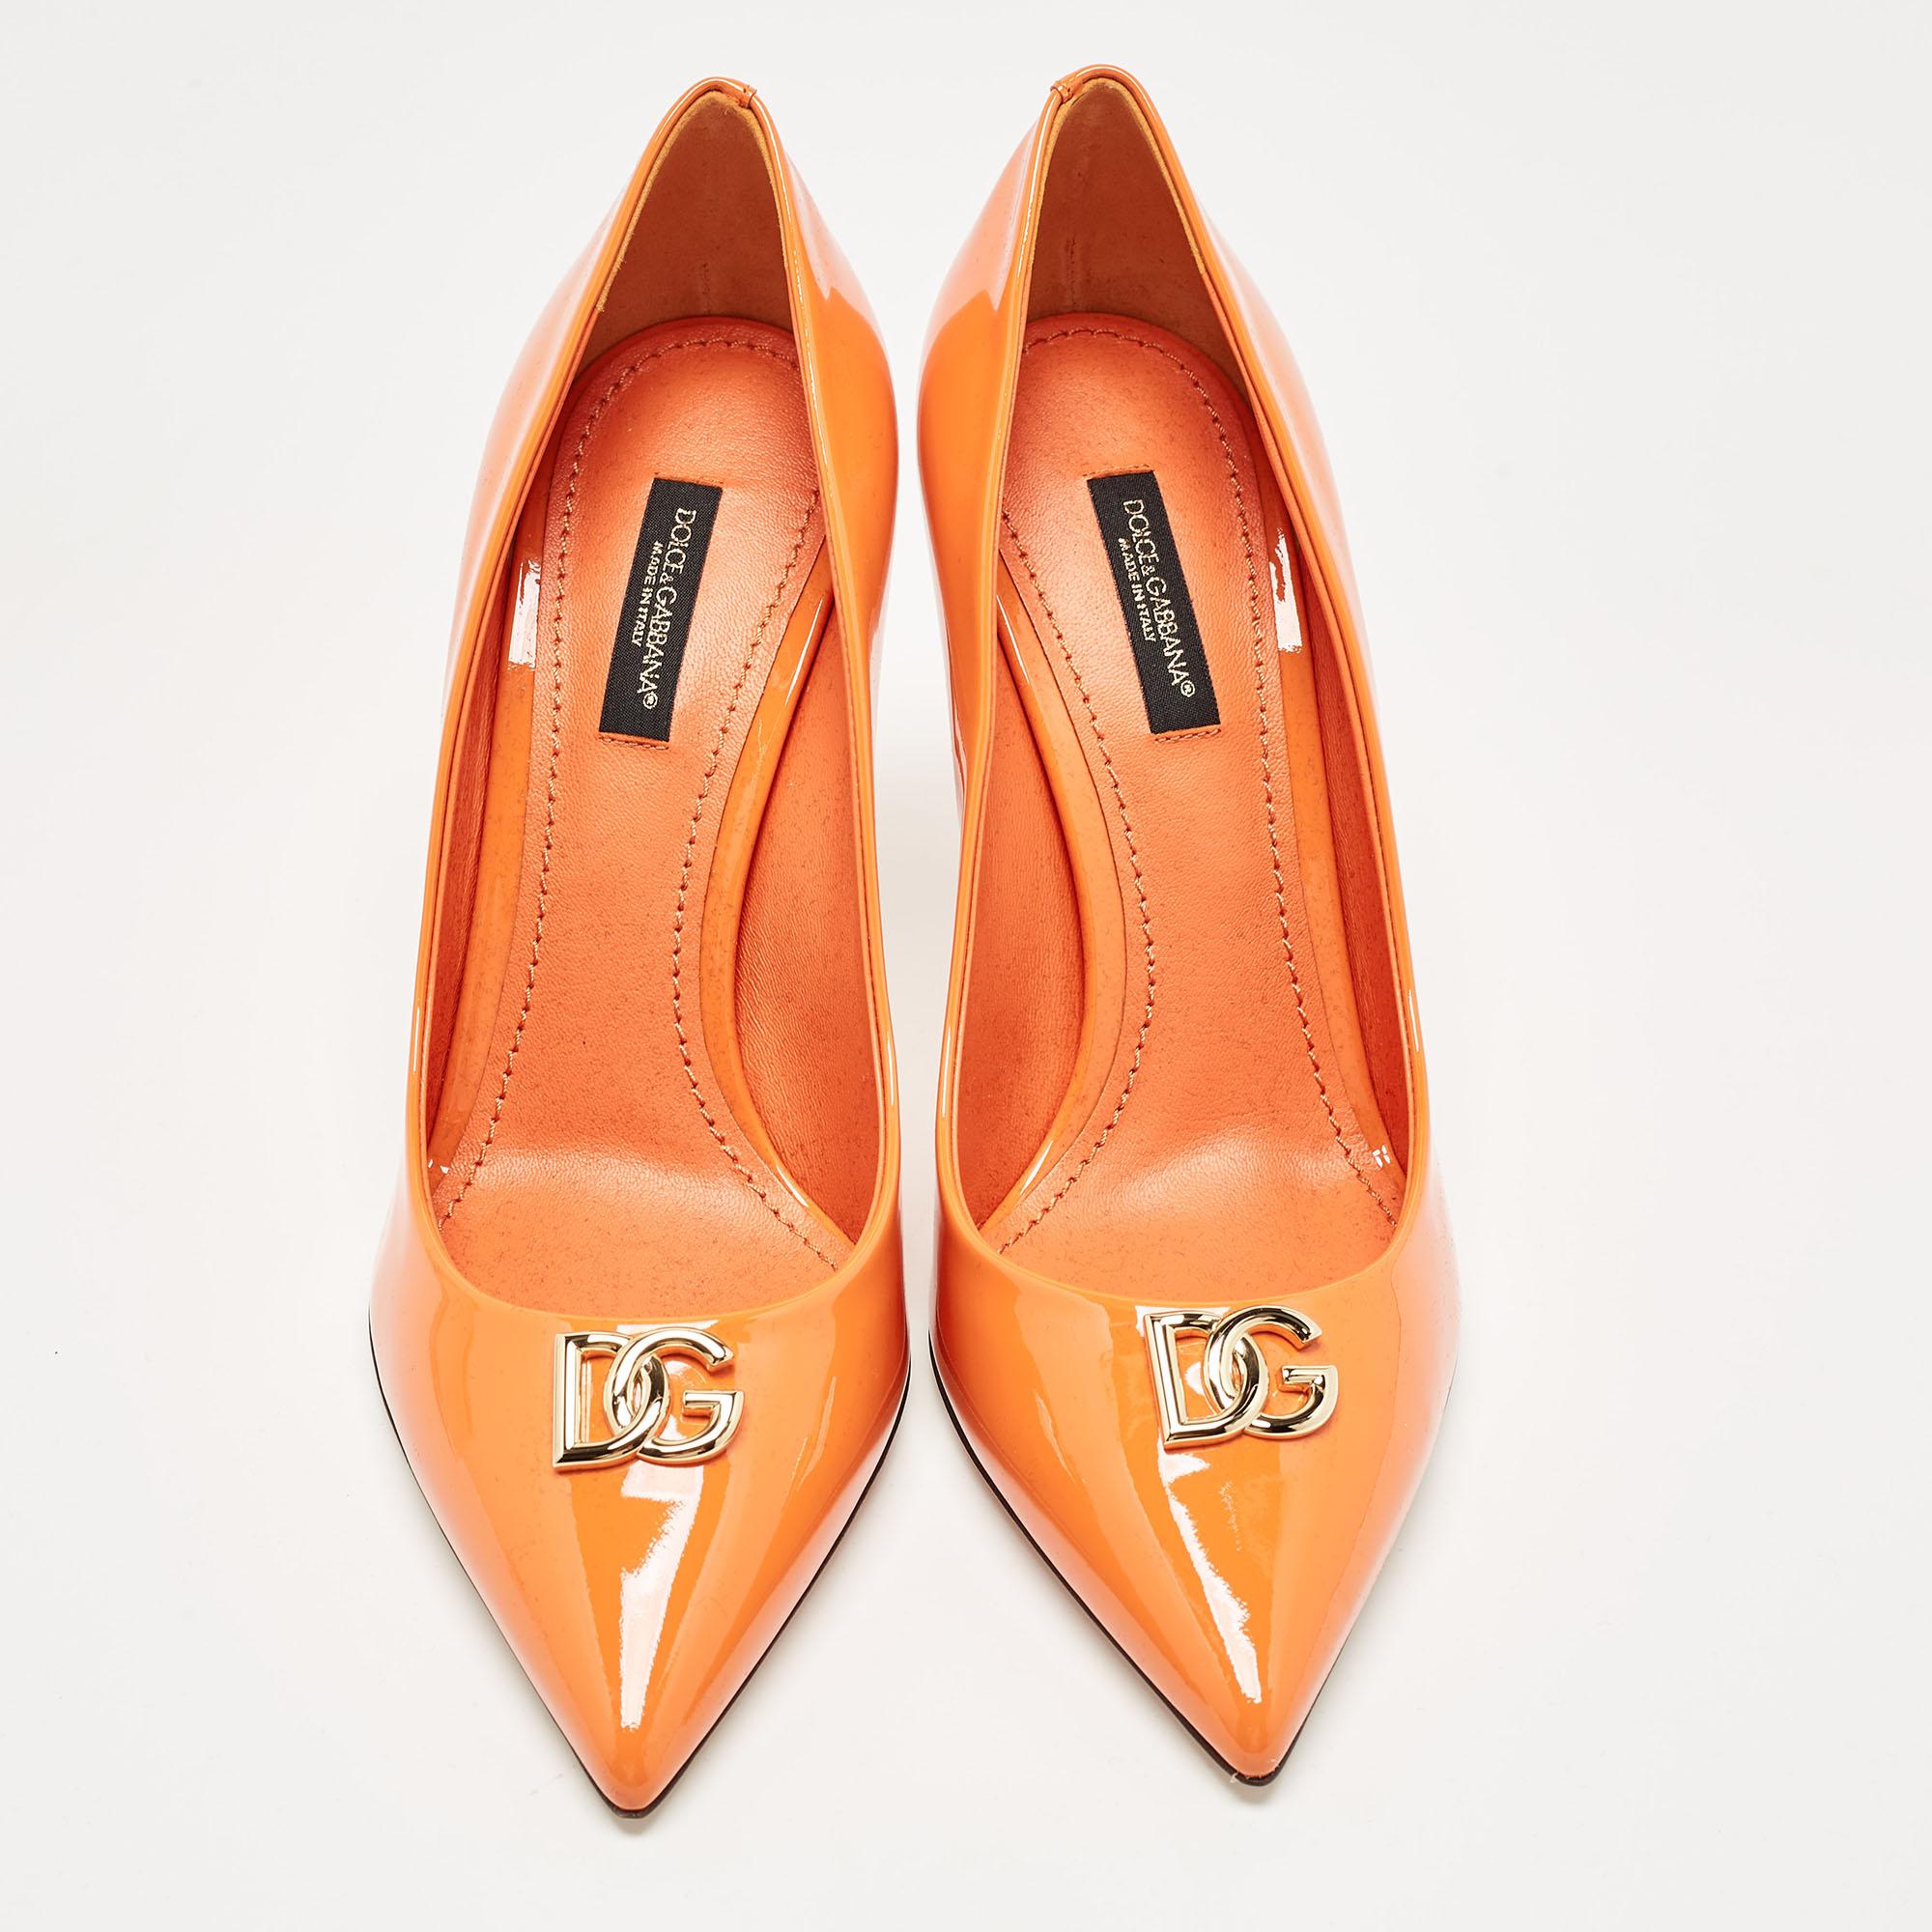 La tradition d'excellence de la maison de couture, associée à une sensibilité au design moderne, fait de ces escarpins orange Dolce & Gabbana un choix fabuleux. Ils vous aideront à obtenir un look chic en toute simplicité.

Comprend : Sac à